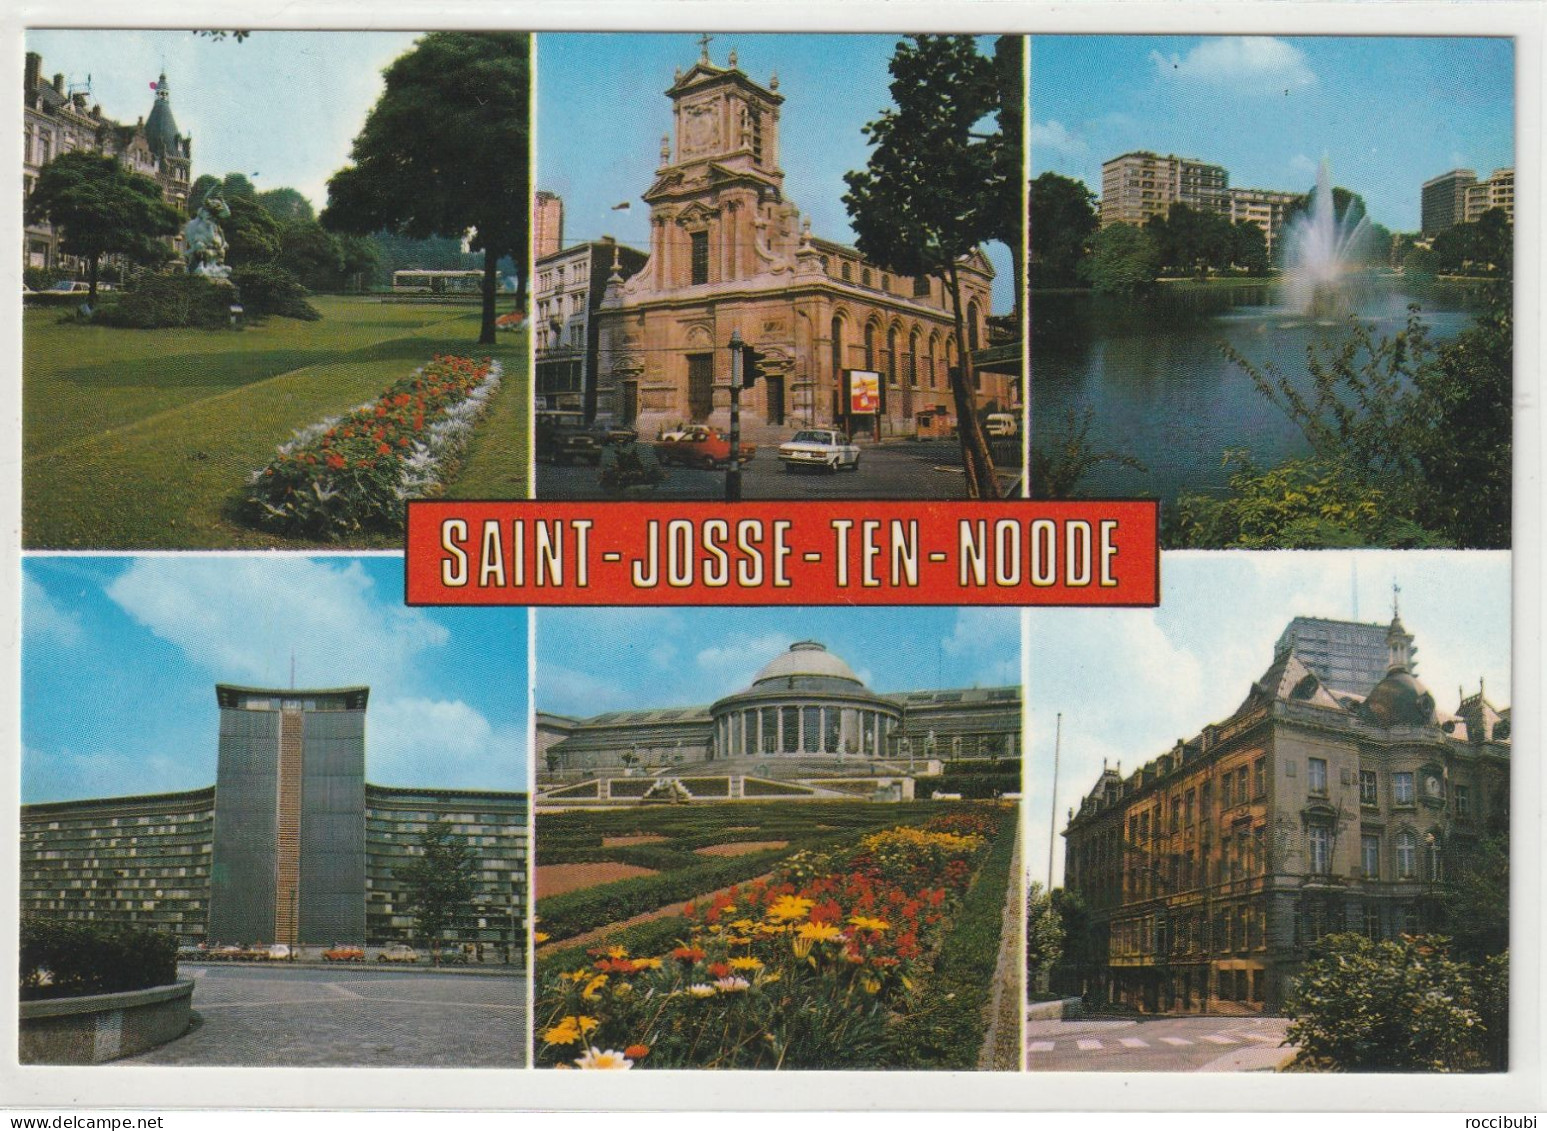 Saint-Josse-ten-Noode - St-Josse-ten-Noode - St-Joost-ten-Node